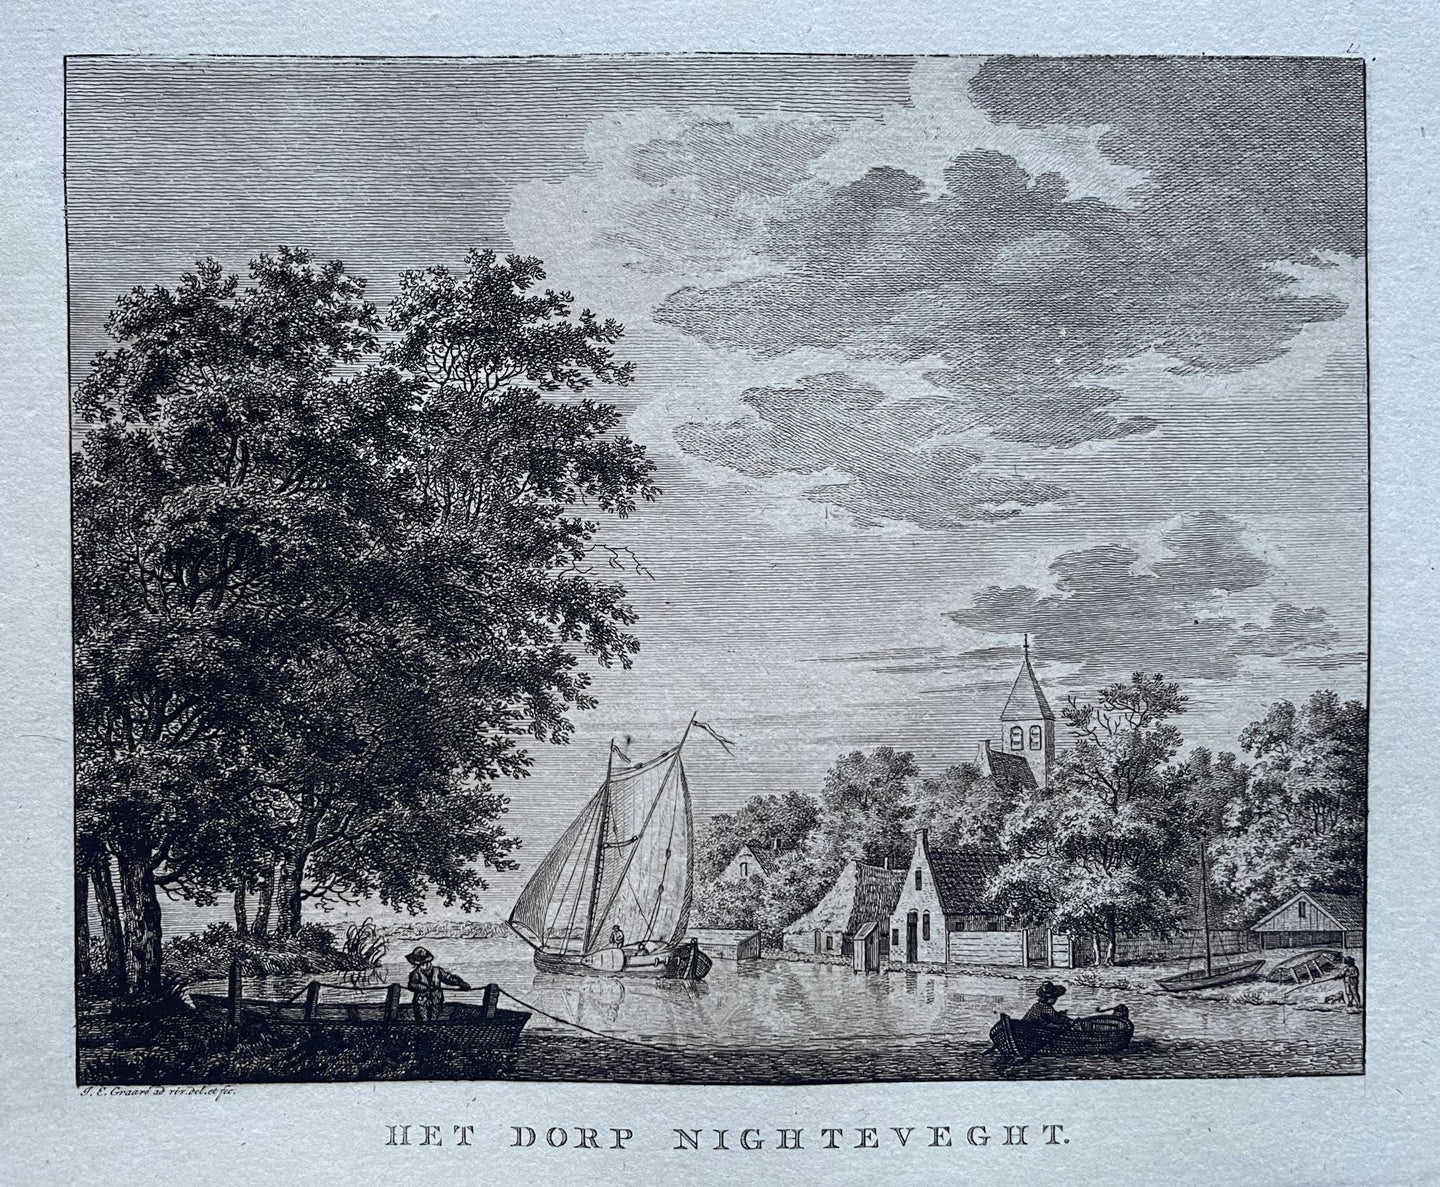 Nigtevecht - Jan Evert Grave - circa 1790